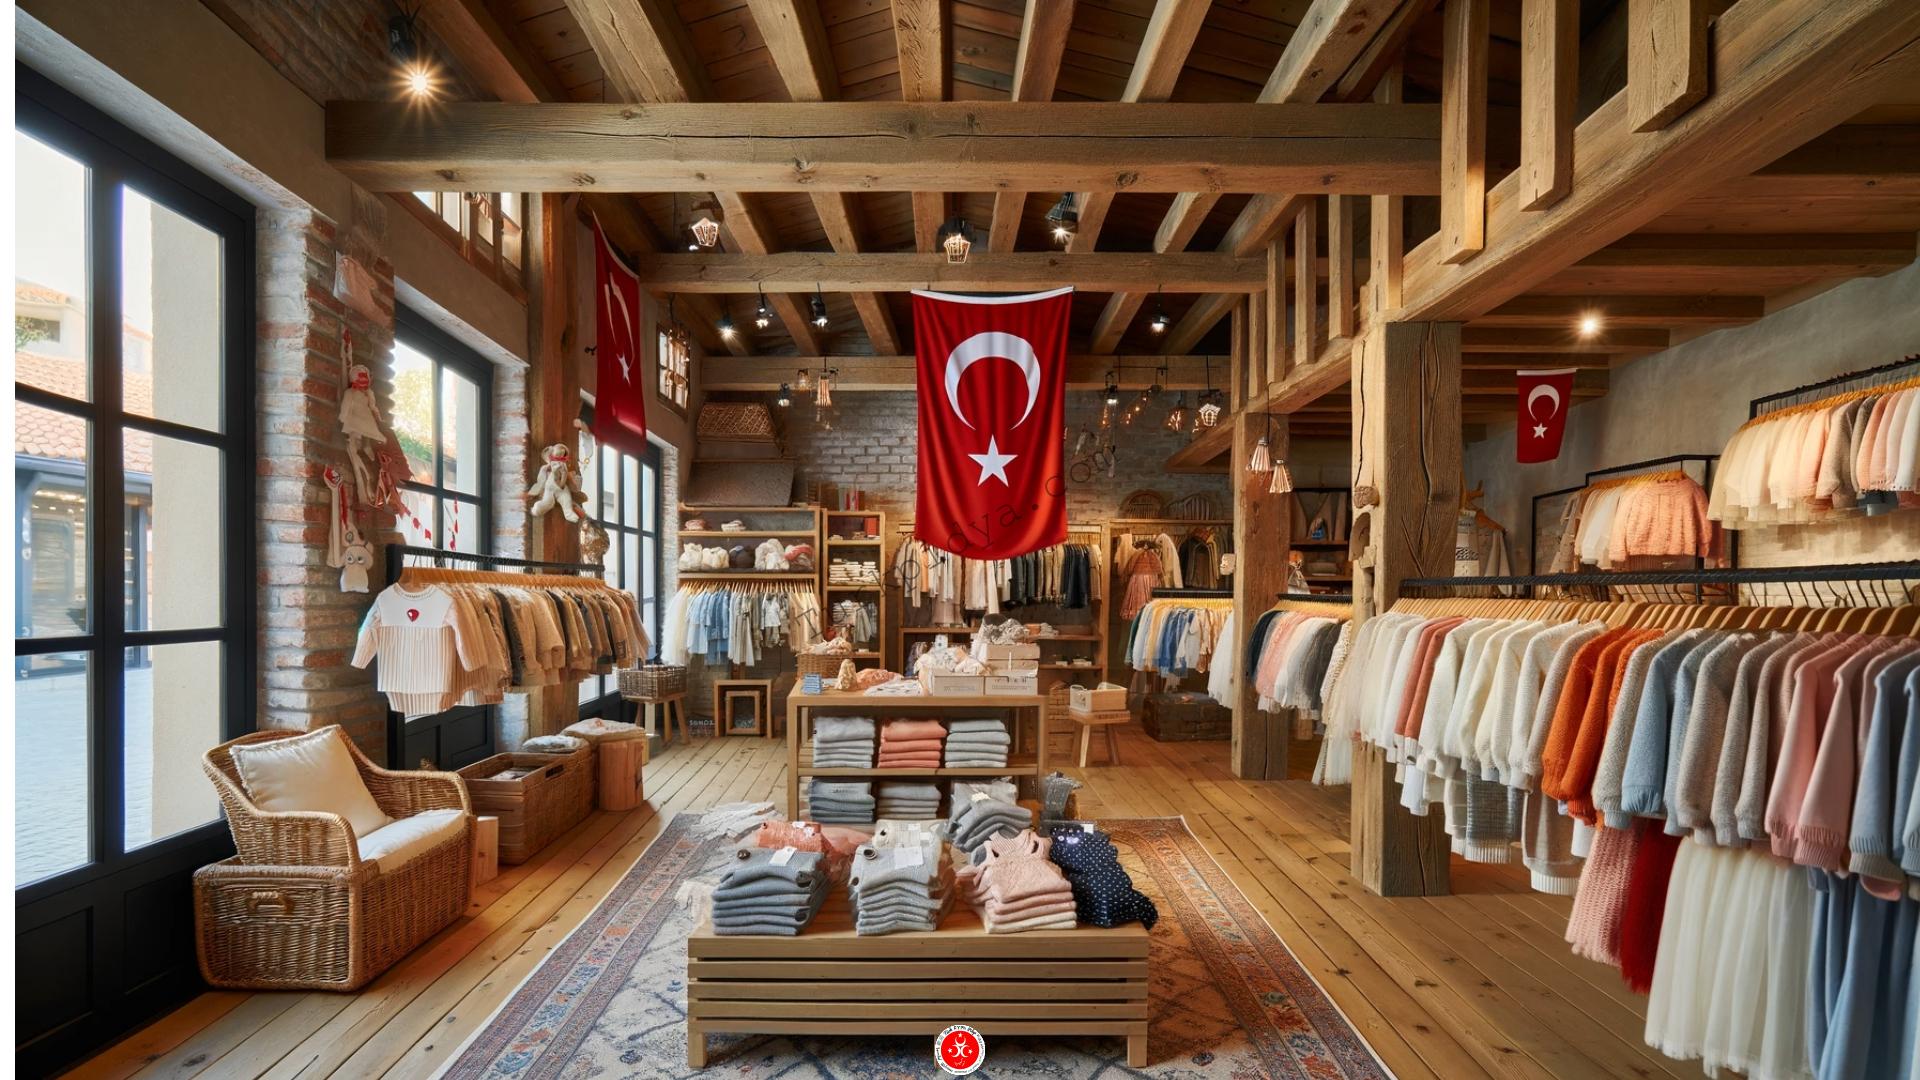 Χονδρικό εμπόριο ρούχων στην Τουρκία